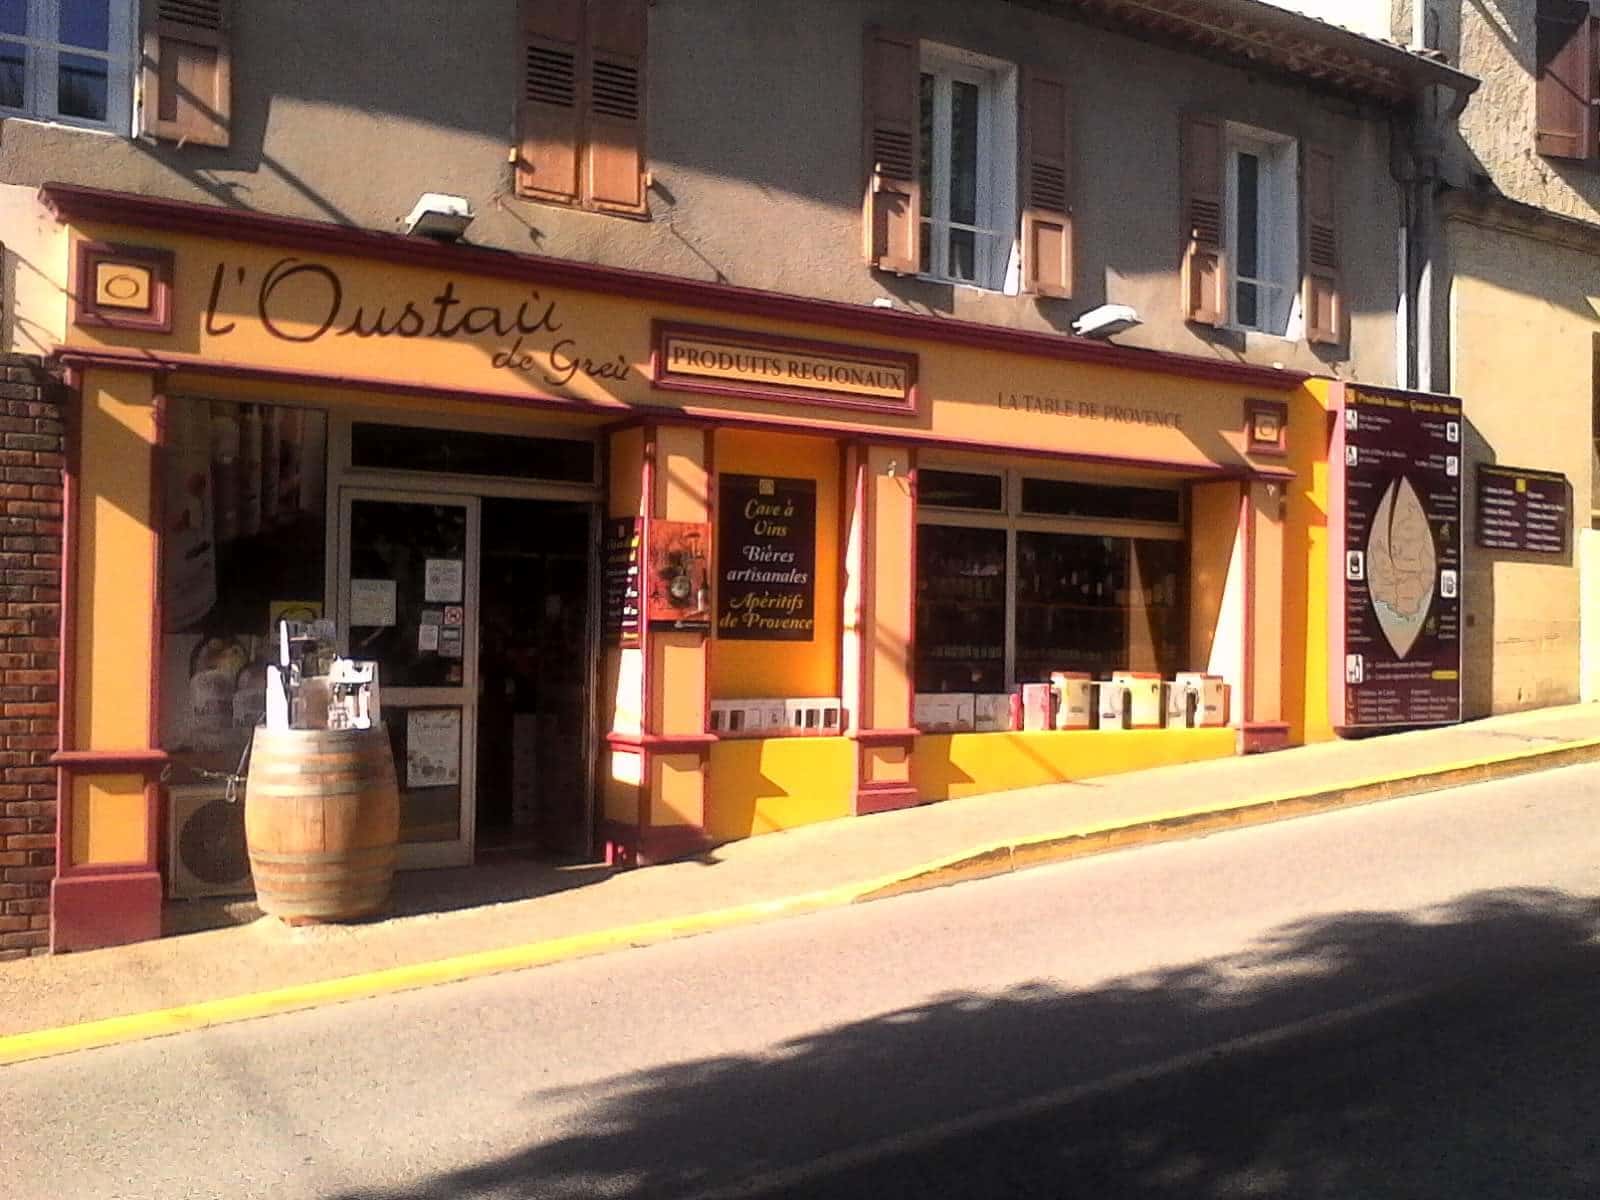 Notre boutique "L'Oustaù de Greù" à Gréoux-Les-Bains